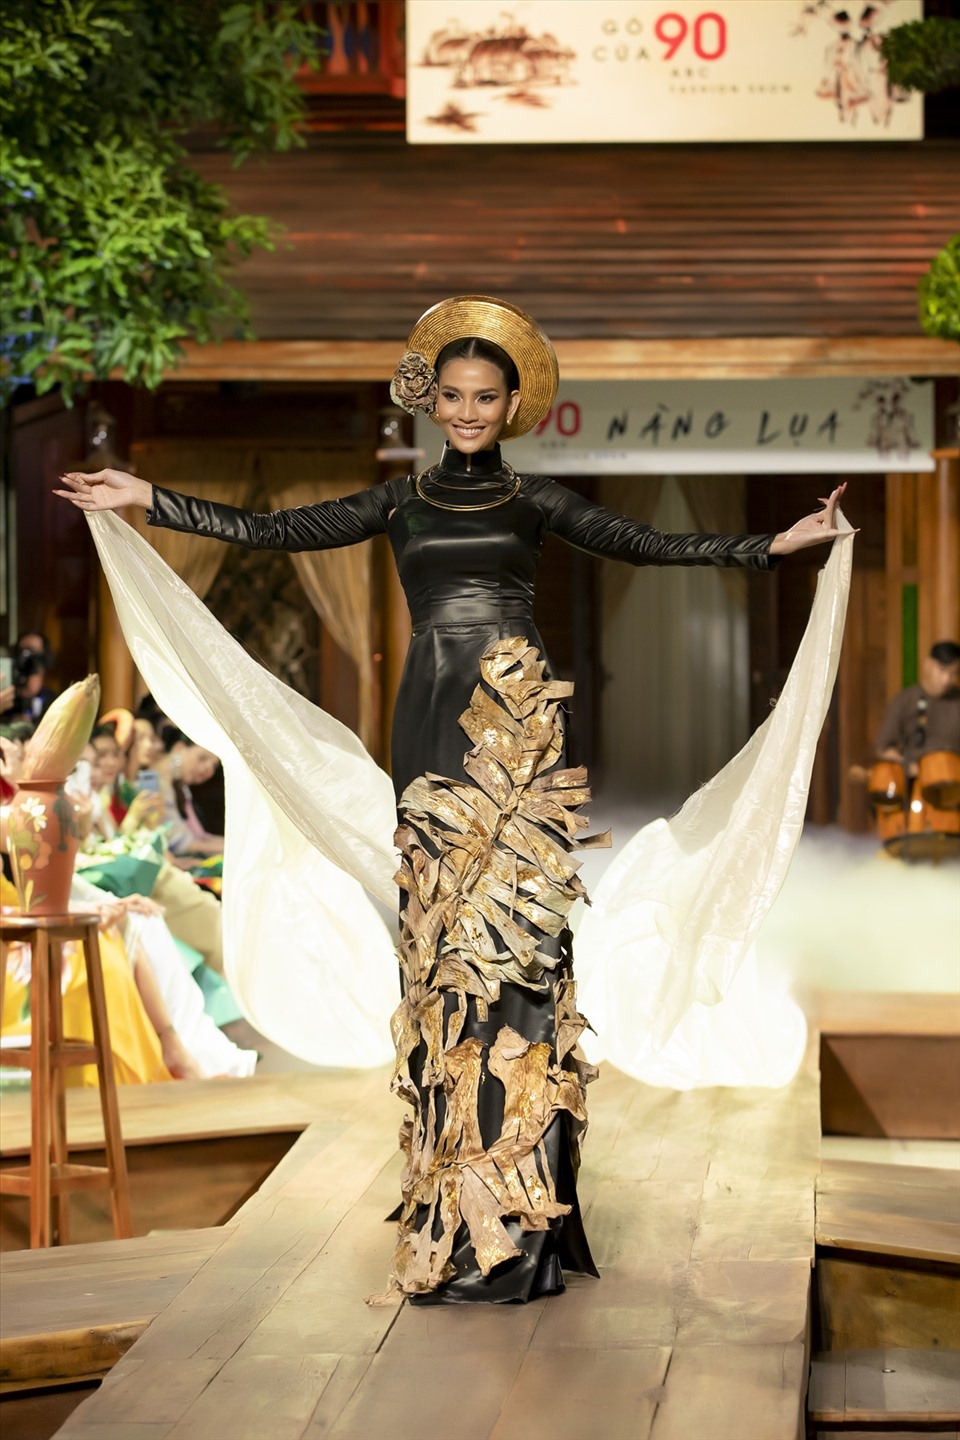 Điểm đặc biệt của bộ áo dài là được trang trí bằng lá chuối khô, kết hợp với bắp chuối non được Trương Thị May cầm trên tay khi trình diễn, giúp gợi nhắc về những gì xưa nhất, mộc mạc nhất của hình ảnh làng quê Việt Nam.